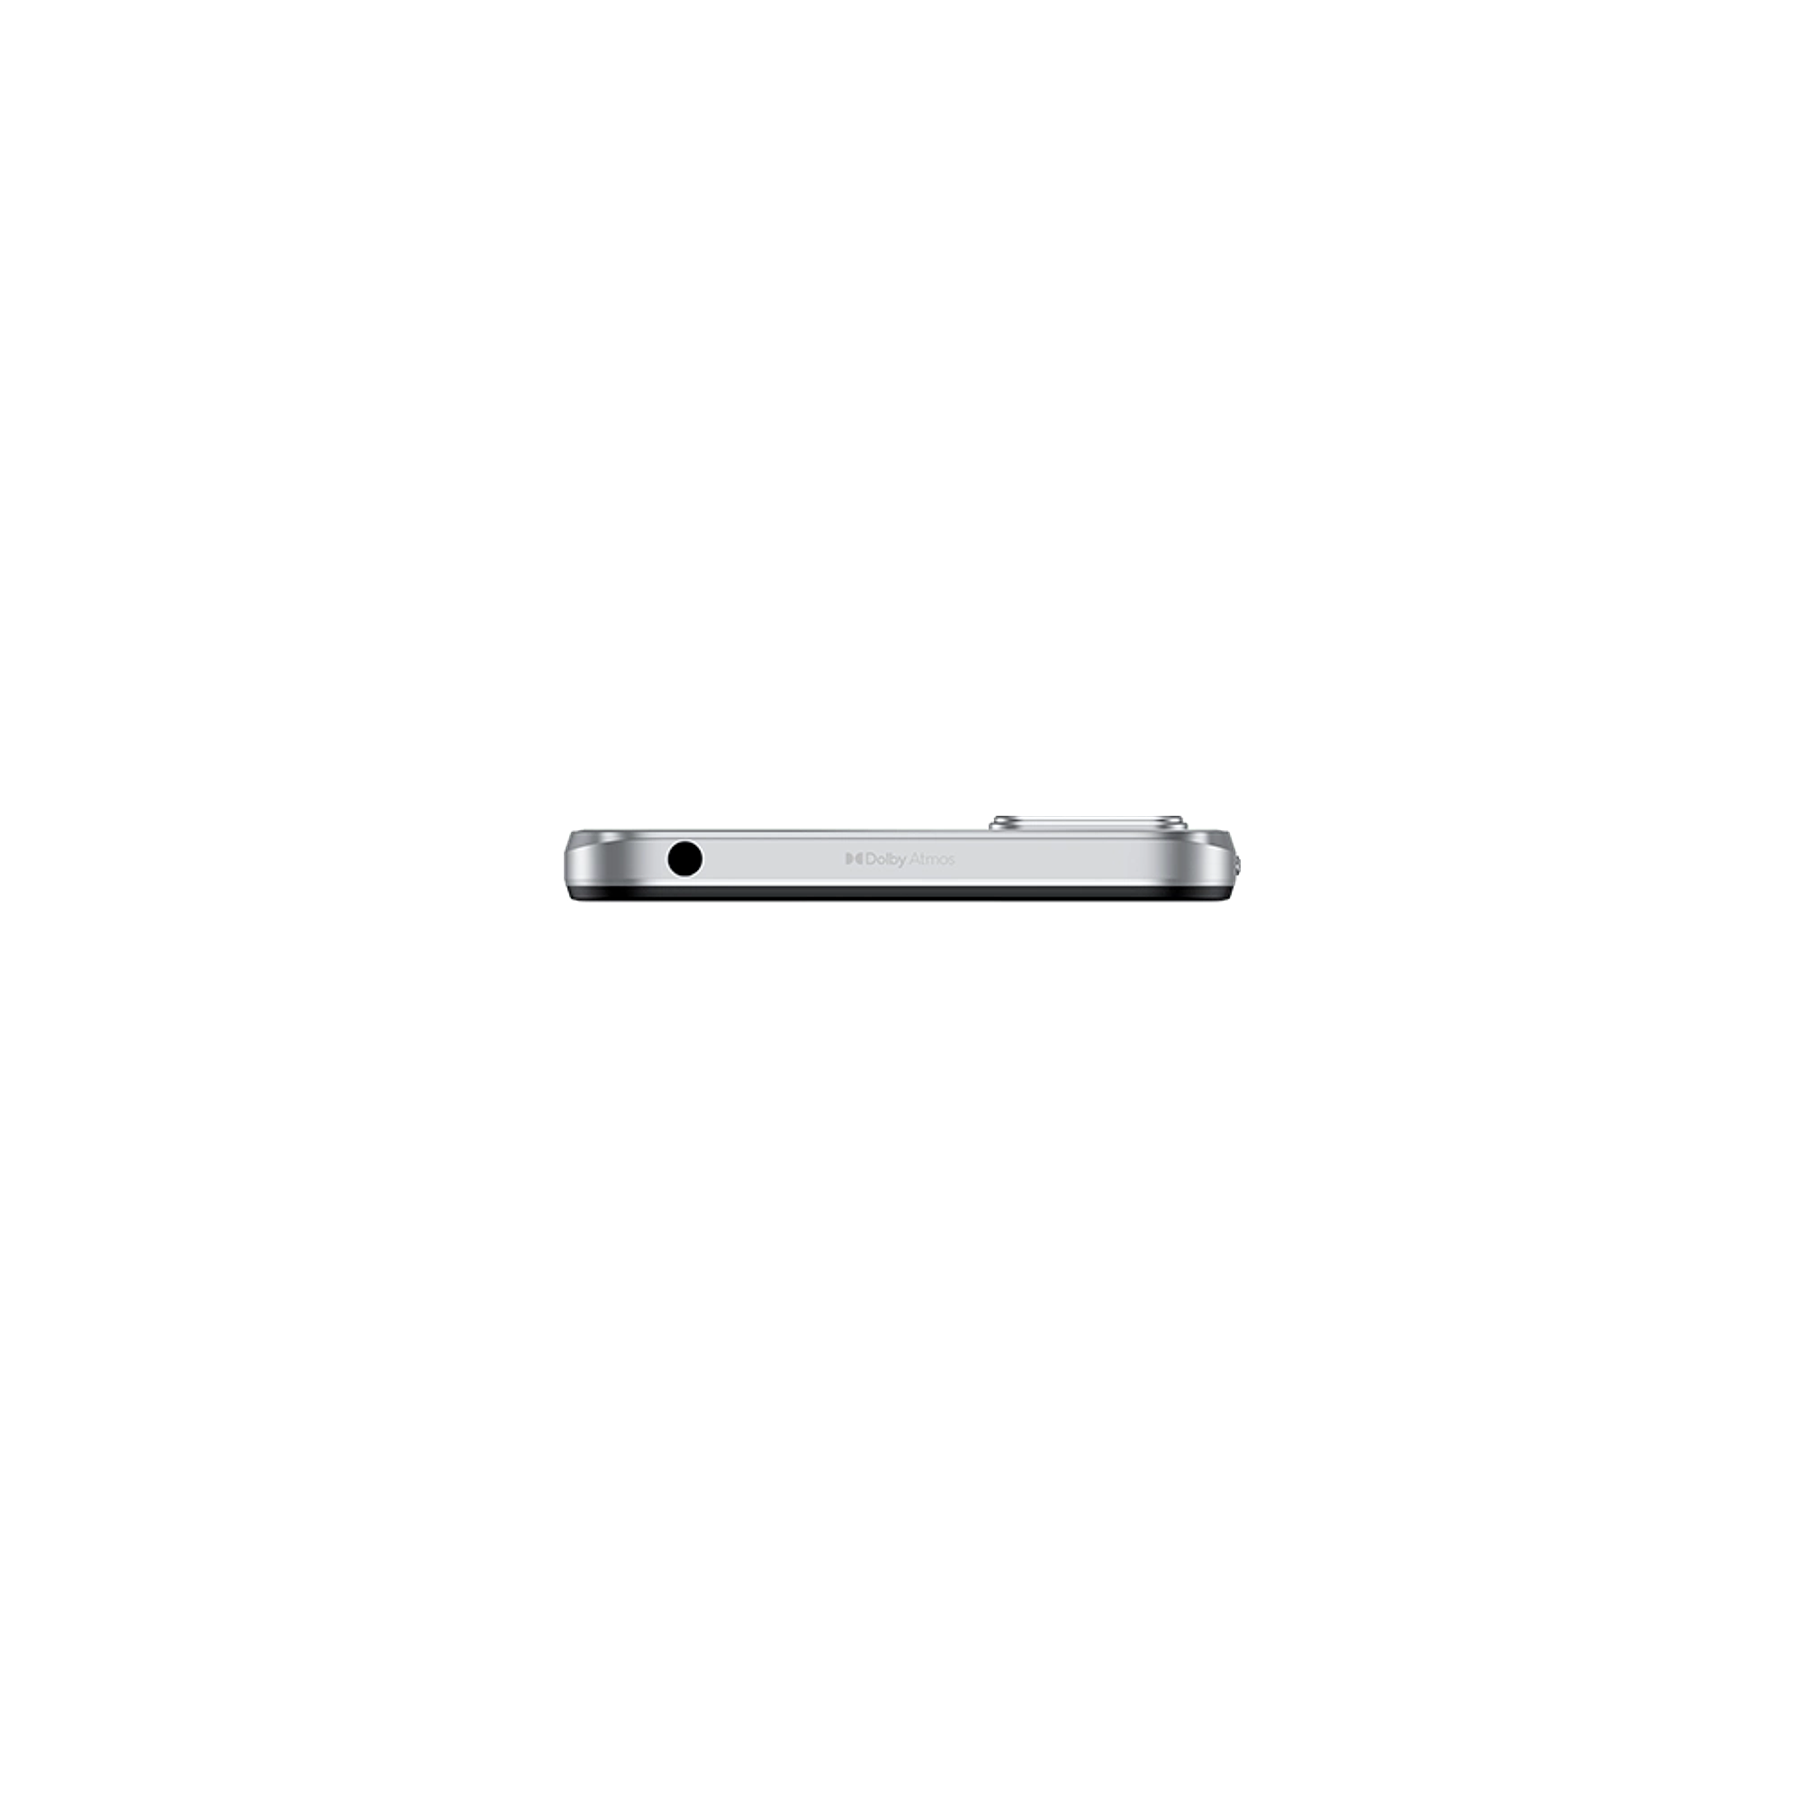 Moto E22 White Cell Phone 4GB 128GB 16MP